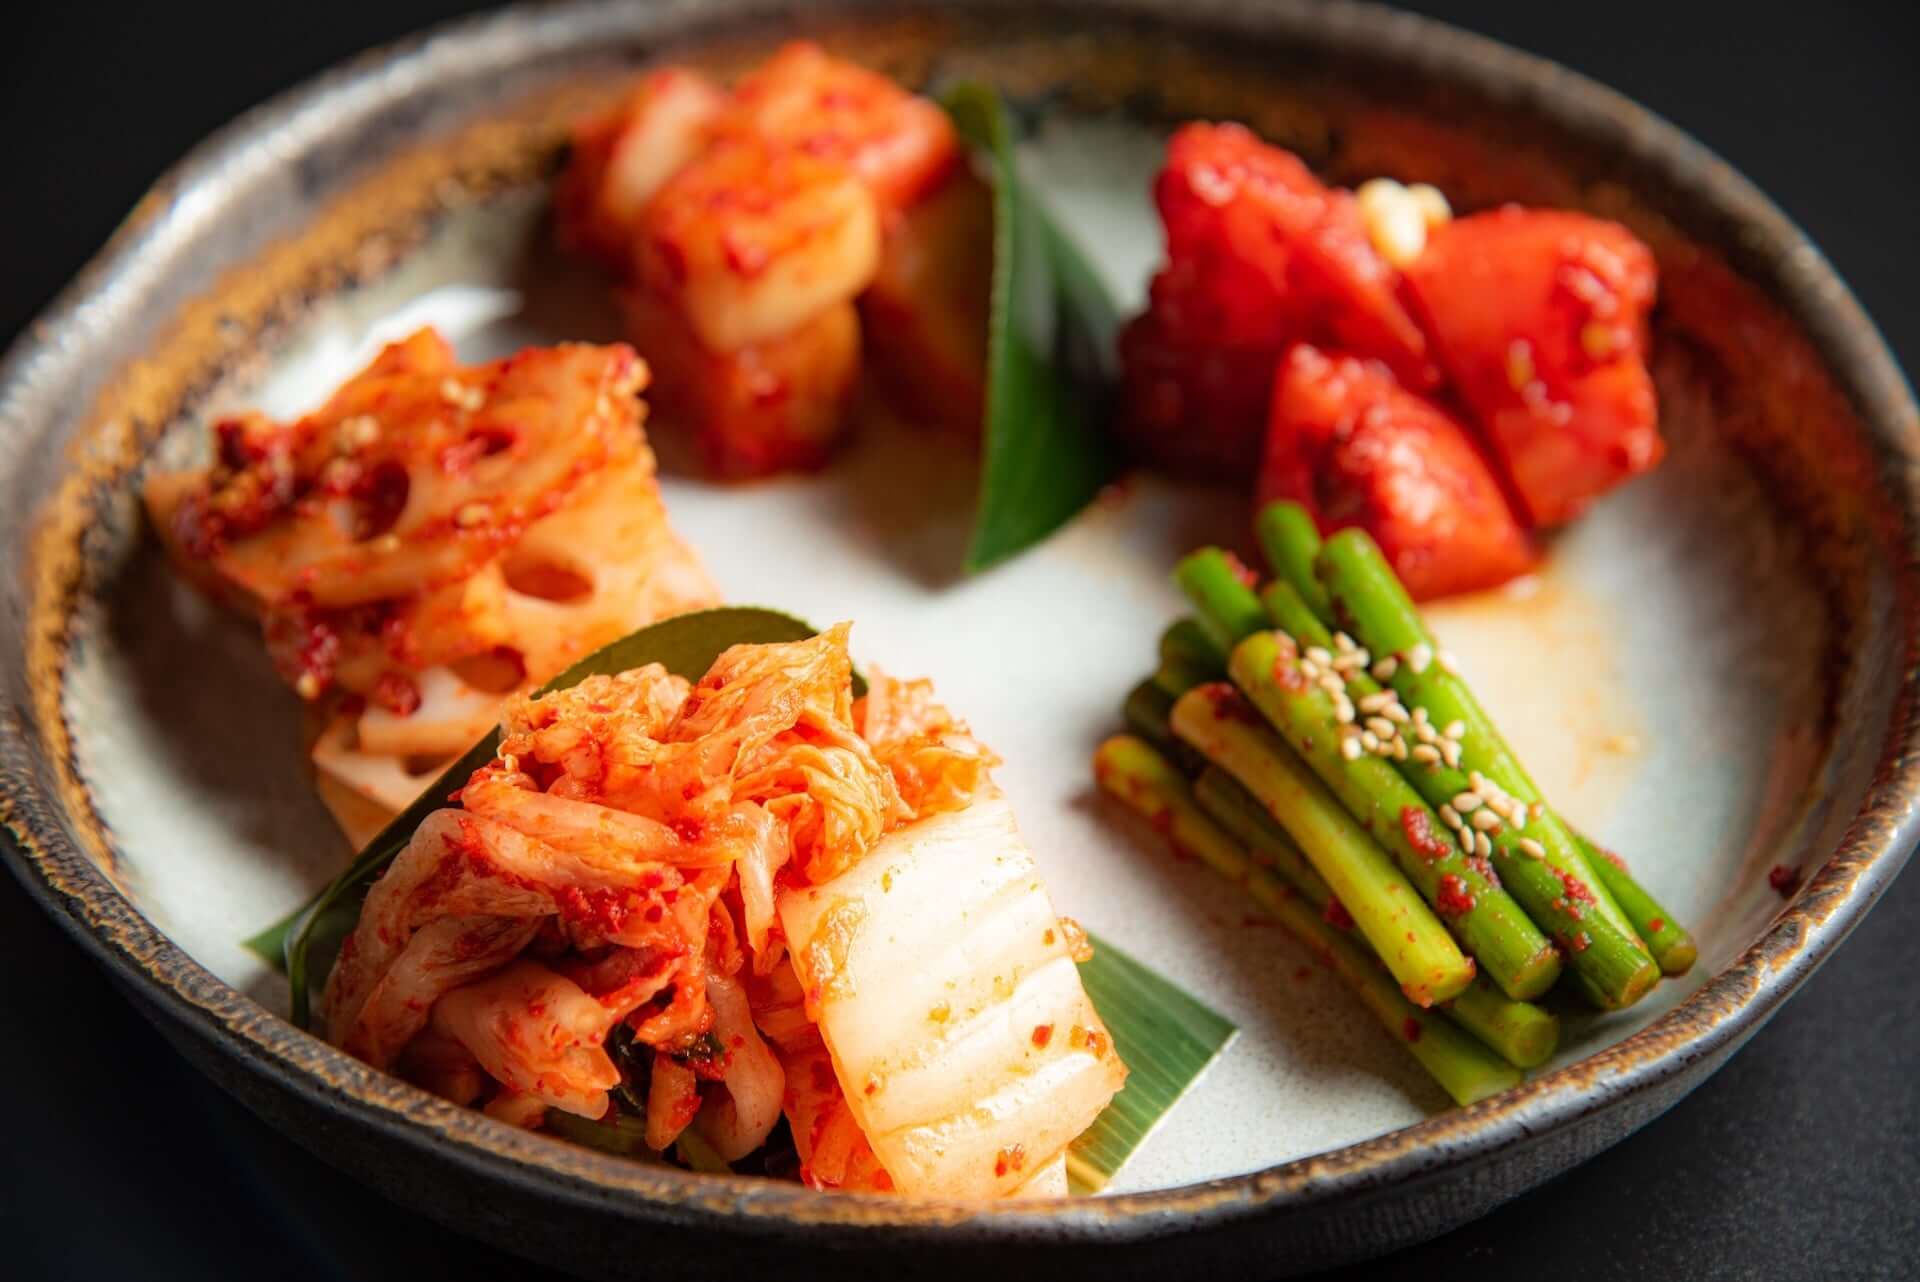 『現代版（ヒョンデ）参鶏湯』を楽しめる韓国料理屋「CLASSIC 参鶏湯」が恵⽐寿に新登場！薄皮蒸し餃子『マンドゥ』などオリジナルメニュー満載 gourmet210311_classic-korea_8-1920x1282